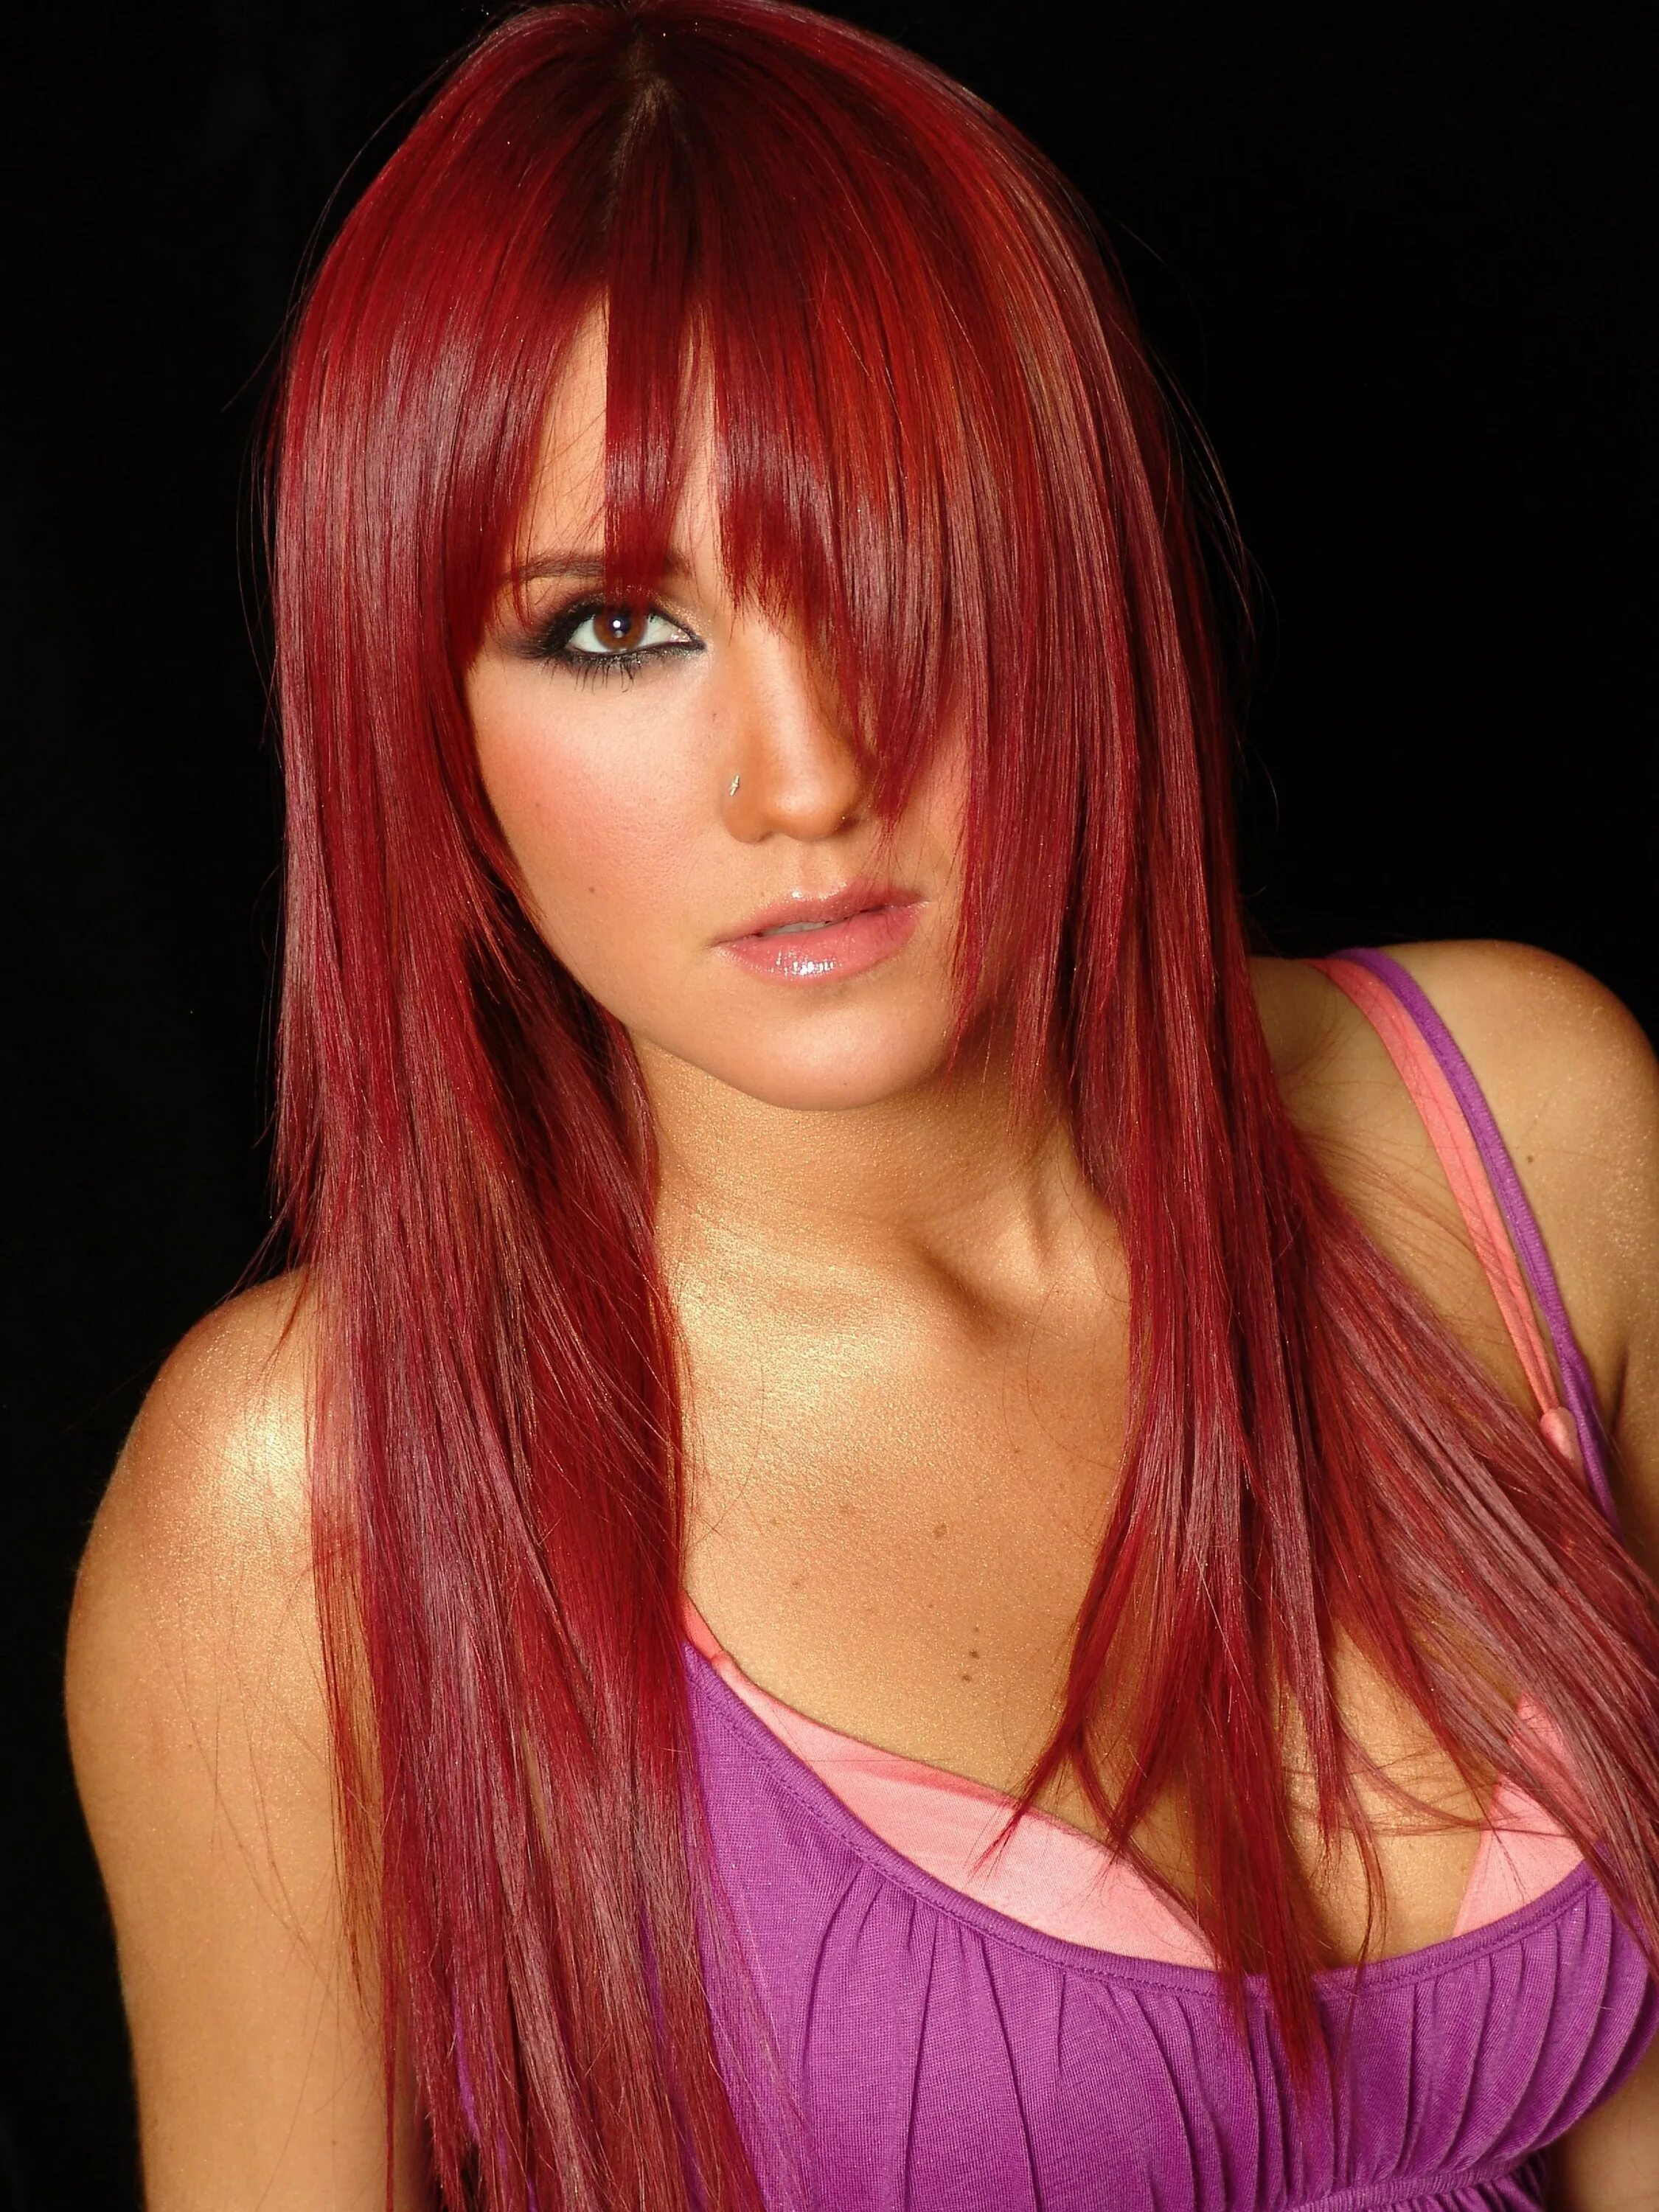 Окрашивание волос в два цвета. Дульсе Мария 2013. Двухцветное окрашивание волос. Рыжий с белыми прядями. Красные пряди на светлых волосах.